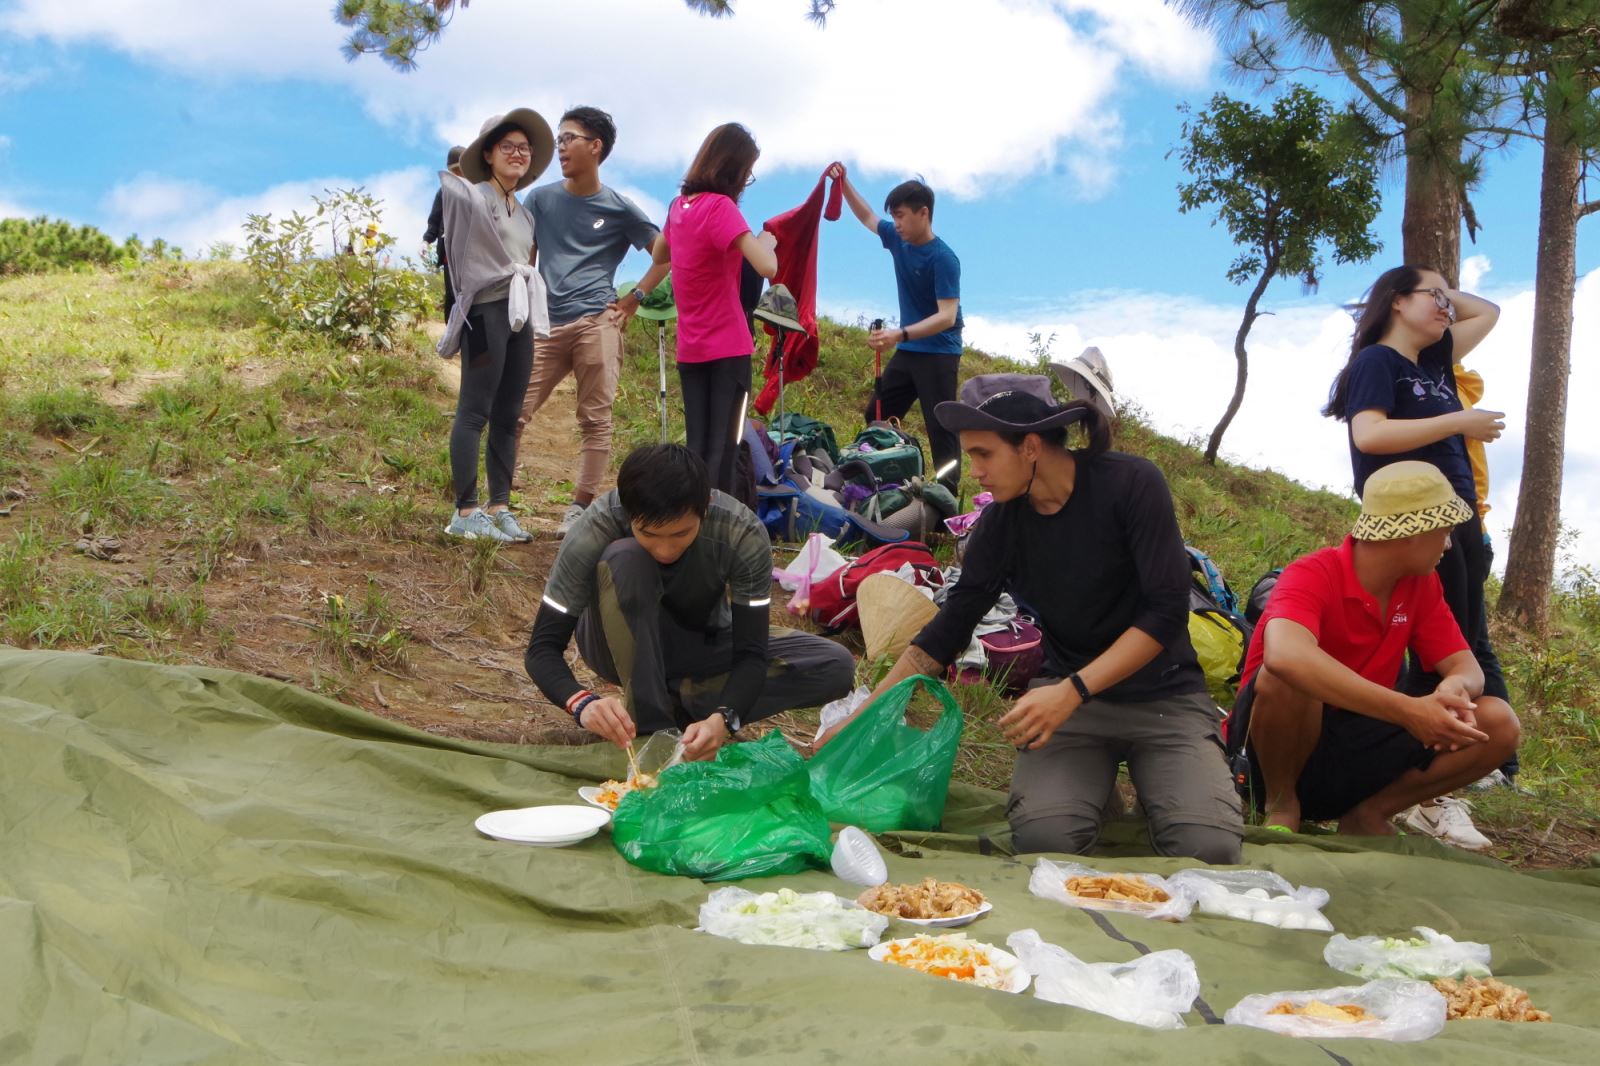 Khi các thành viên trong đoàn nghỉ ngơi thì các tour guide trekking lo chuẩn bị đồ ăn trưa cho khách.